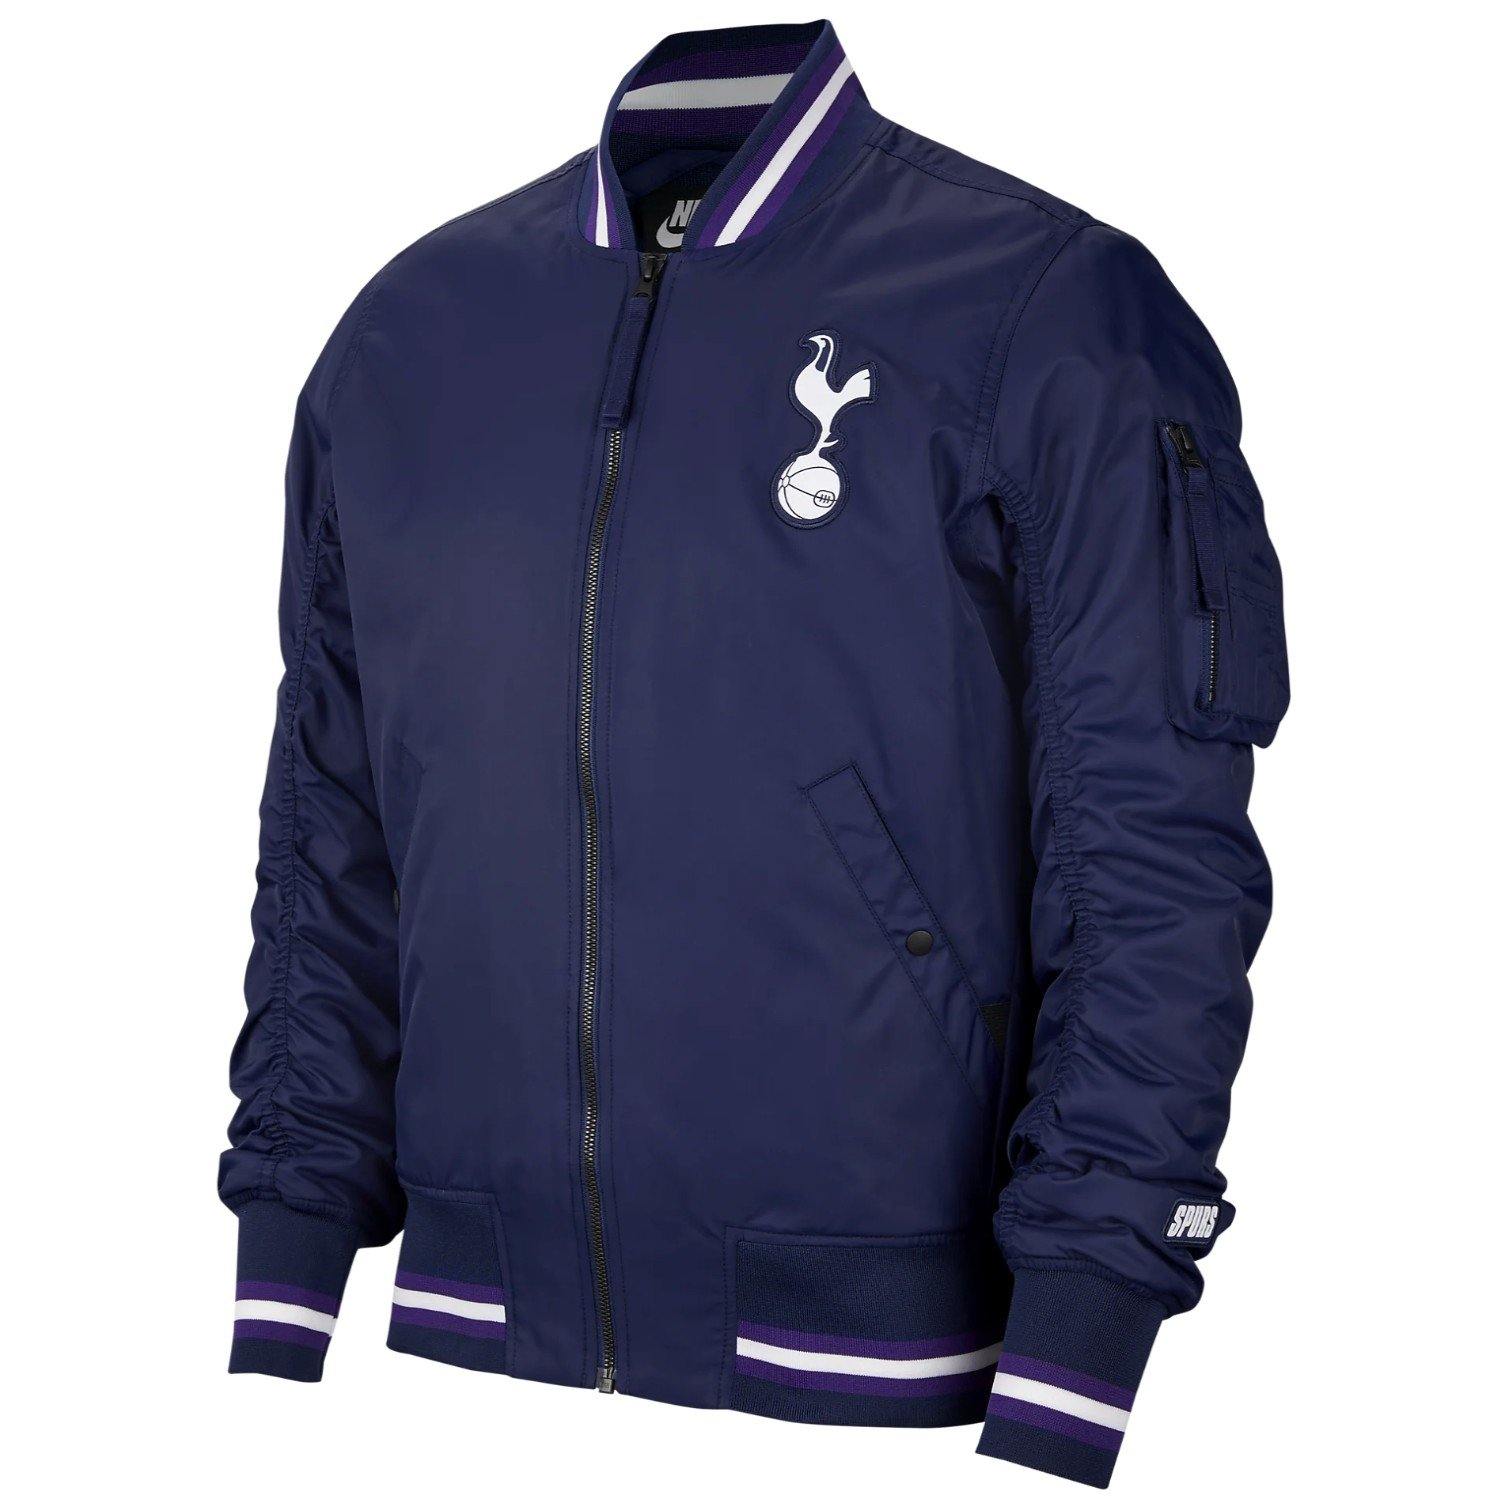 Tottenham Hotspur soccer woven bomber jacket 2019/20 - Nike ...